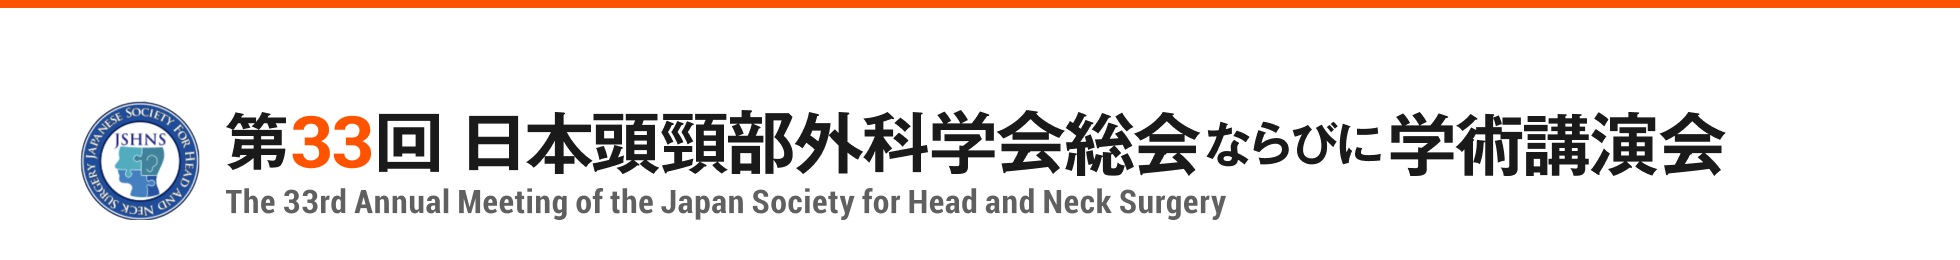 第33回日本頭頸部外科学会総会ならびに学術講演会 The 33rd Annual Meeting of the Japan Society for Head and Neck Surgery